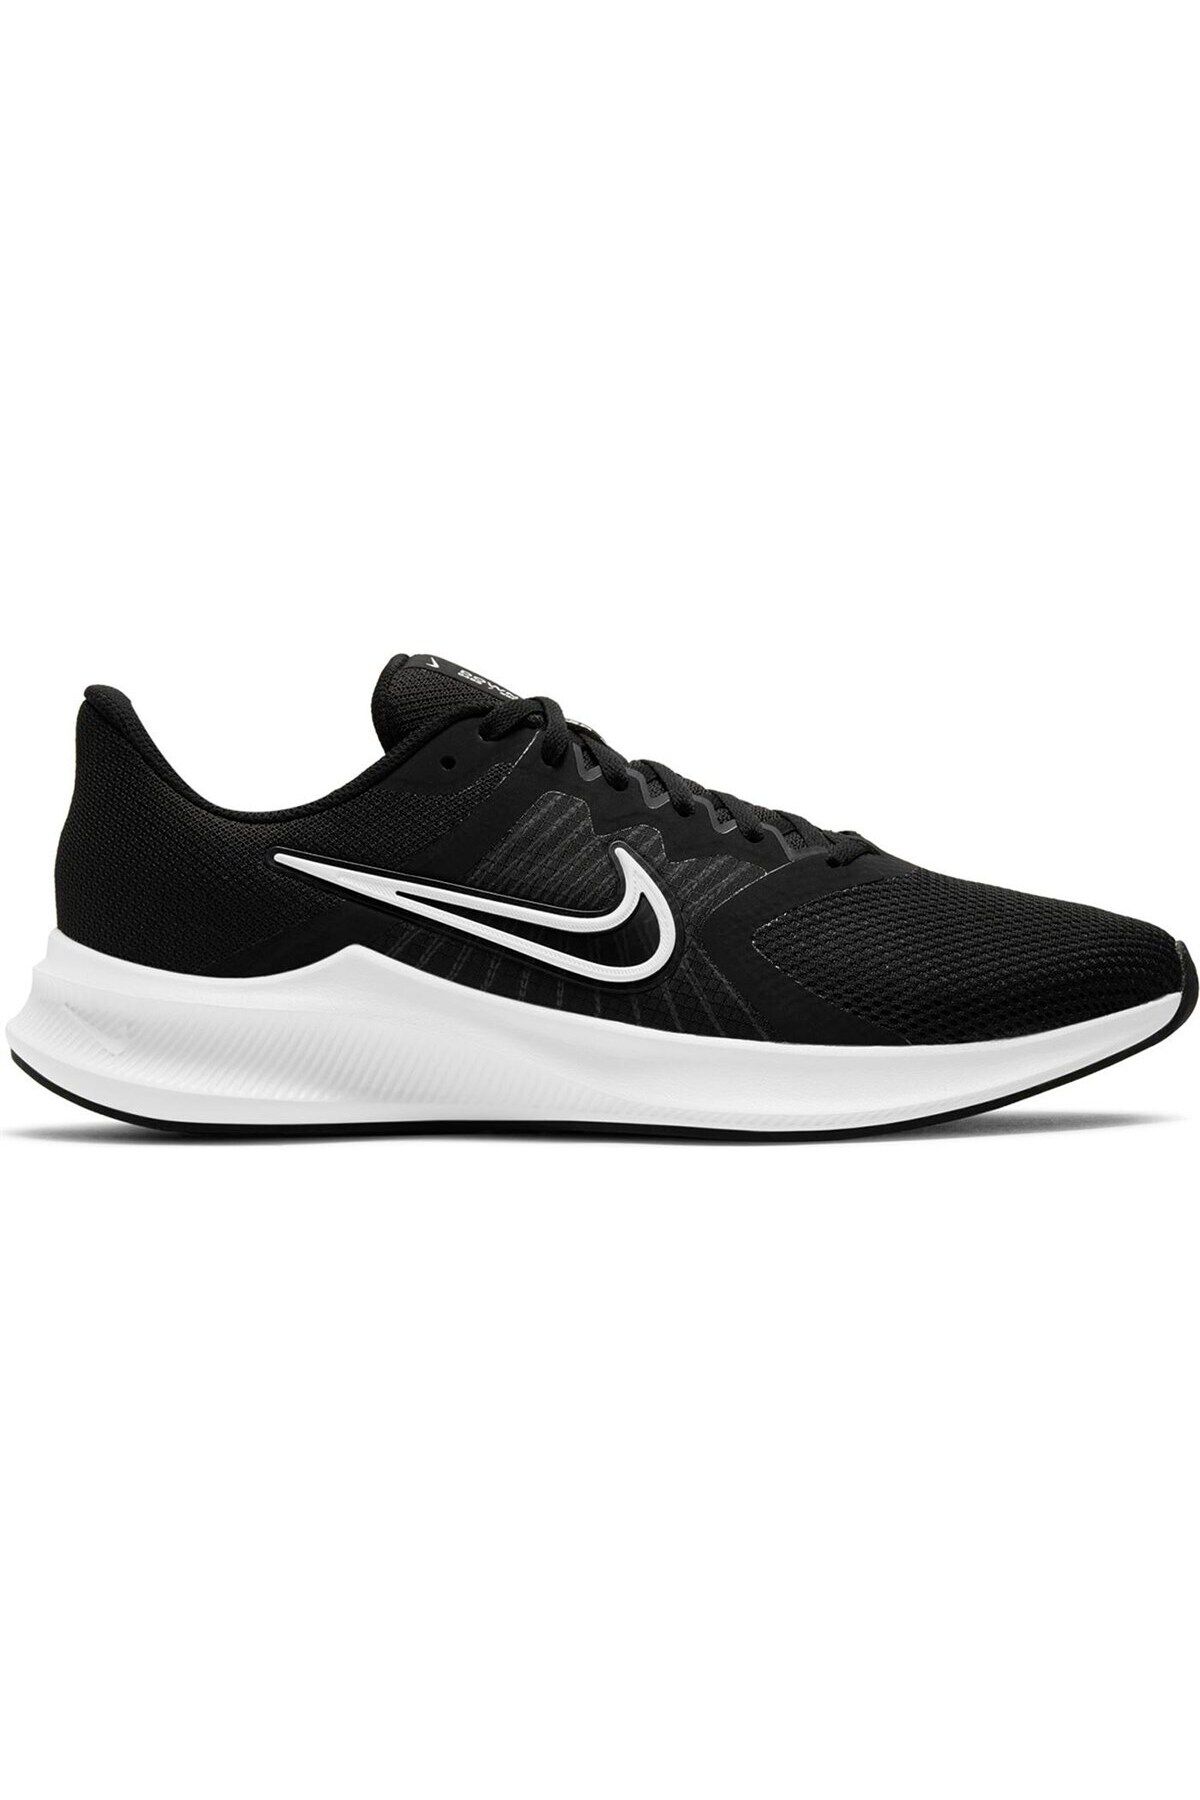 Nike Downshifter 11 Erkek Siyah Koşu Ayakkabısı Cw3411-006